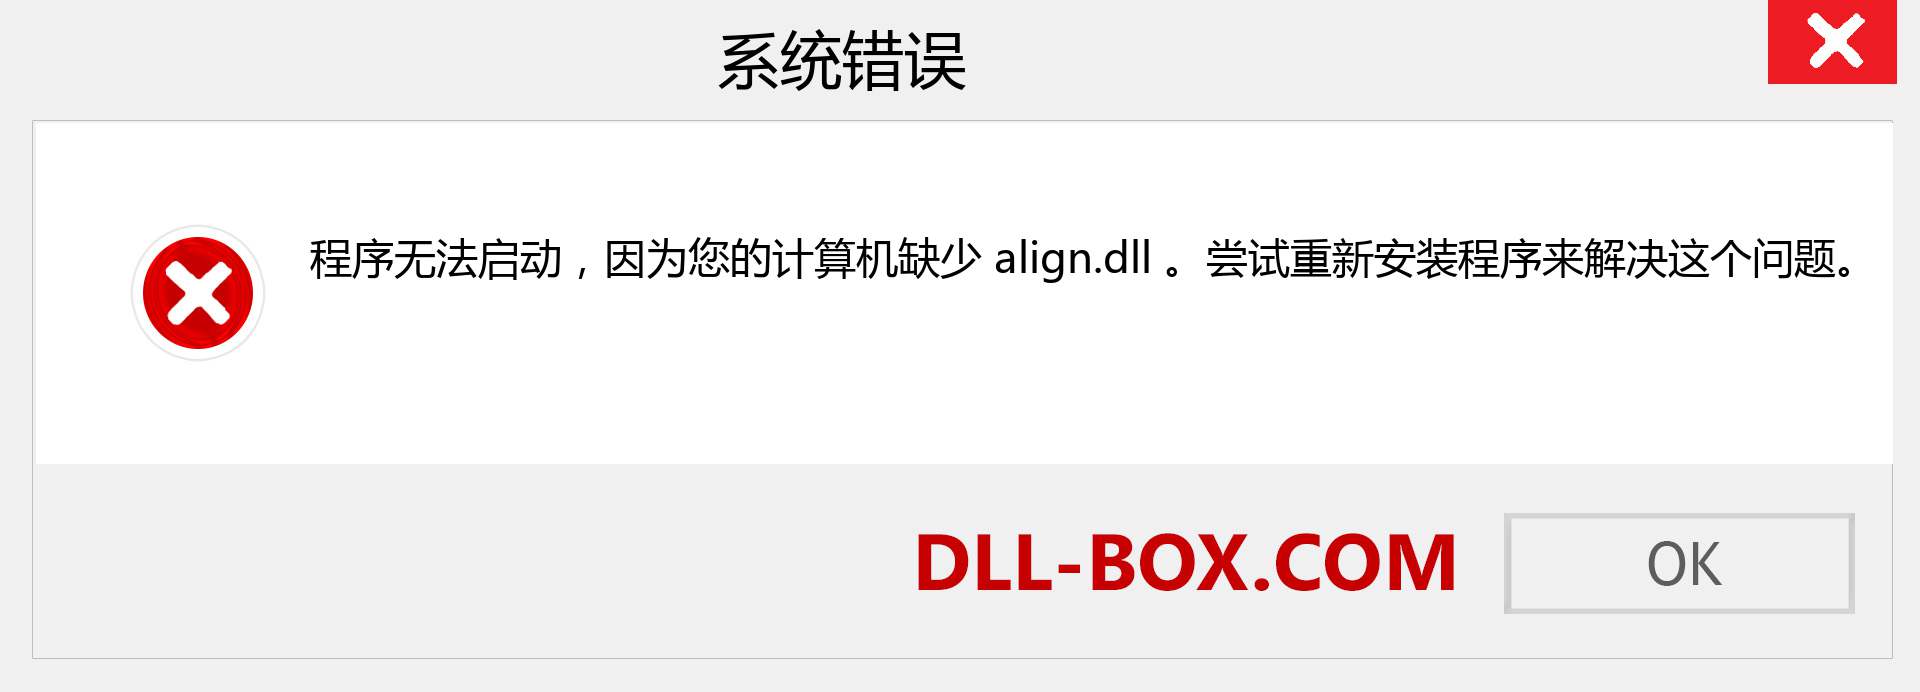 align.dll 文件丢失？。 适用于 Windows 7、8、10 的下载 - 修复 Windows、照片、图像上的 align dll 丢失错误